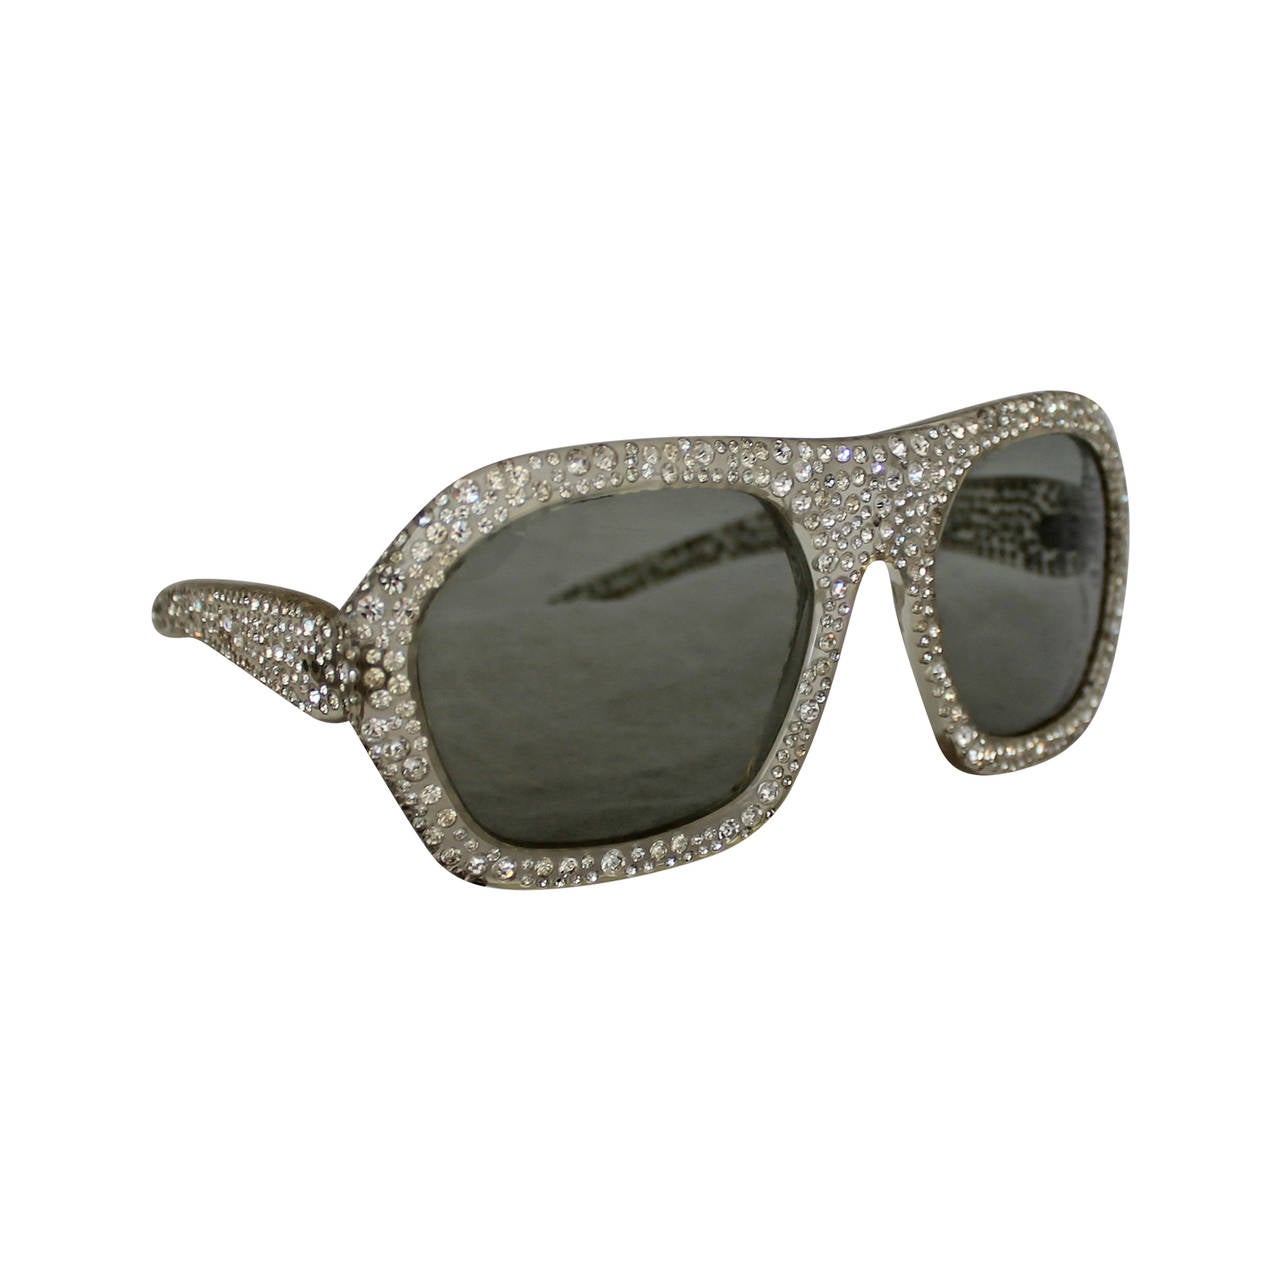 Nina Ricci 1970's Vintage Lucite & Rhinestone Sunglasses